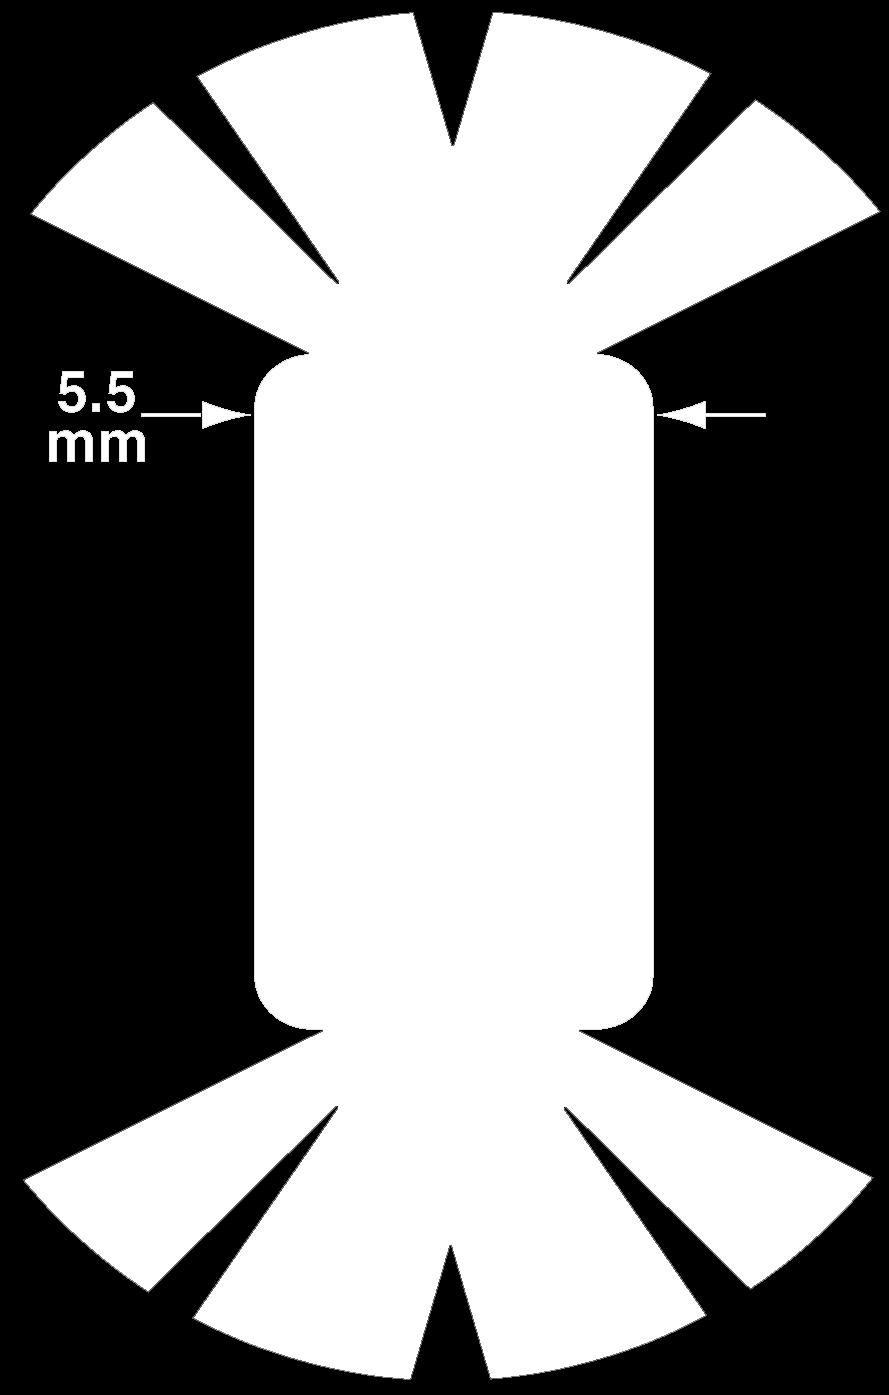 Po prawej stronie rysunku, na górze przedstawiony jest przekrój przez wycinek kapsuły: zewnętrzna warstwa zbudowana z